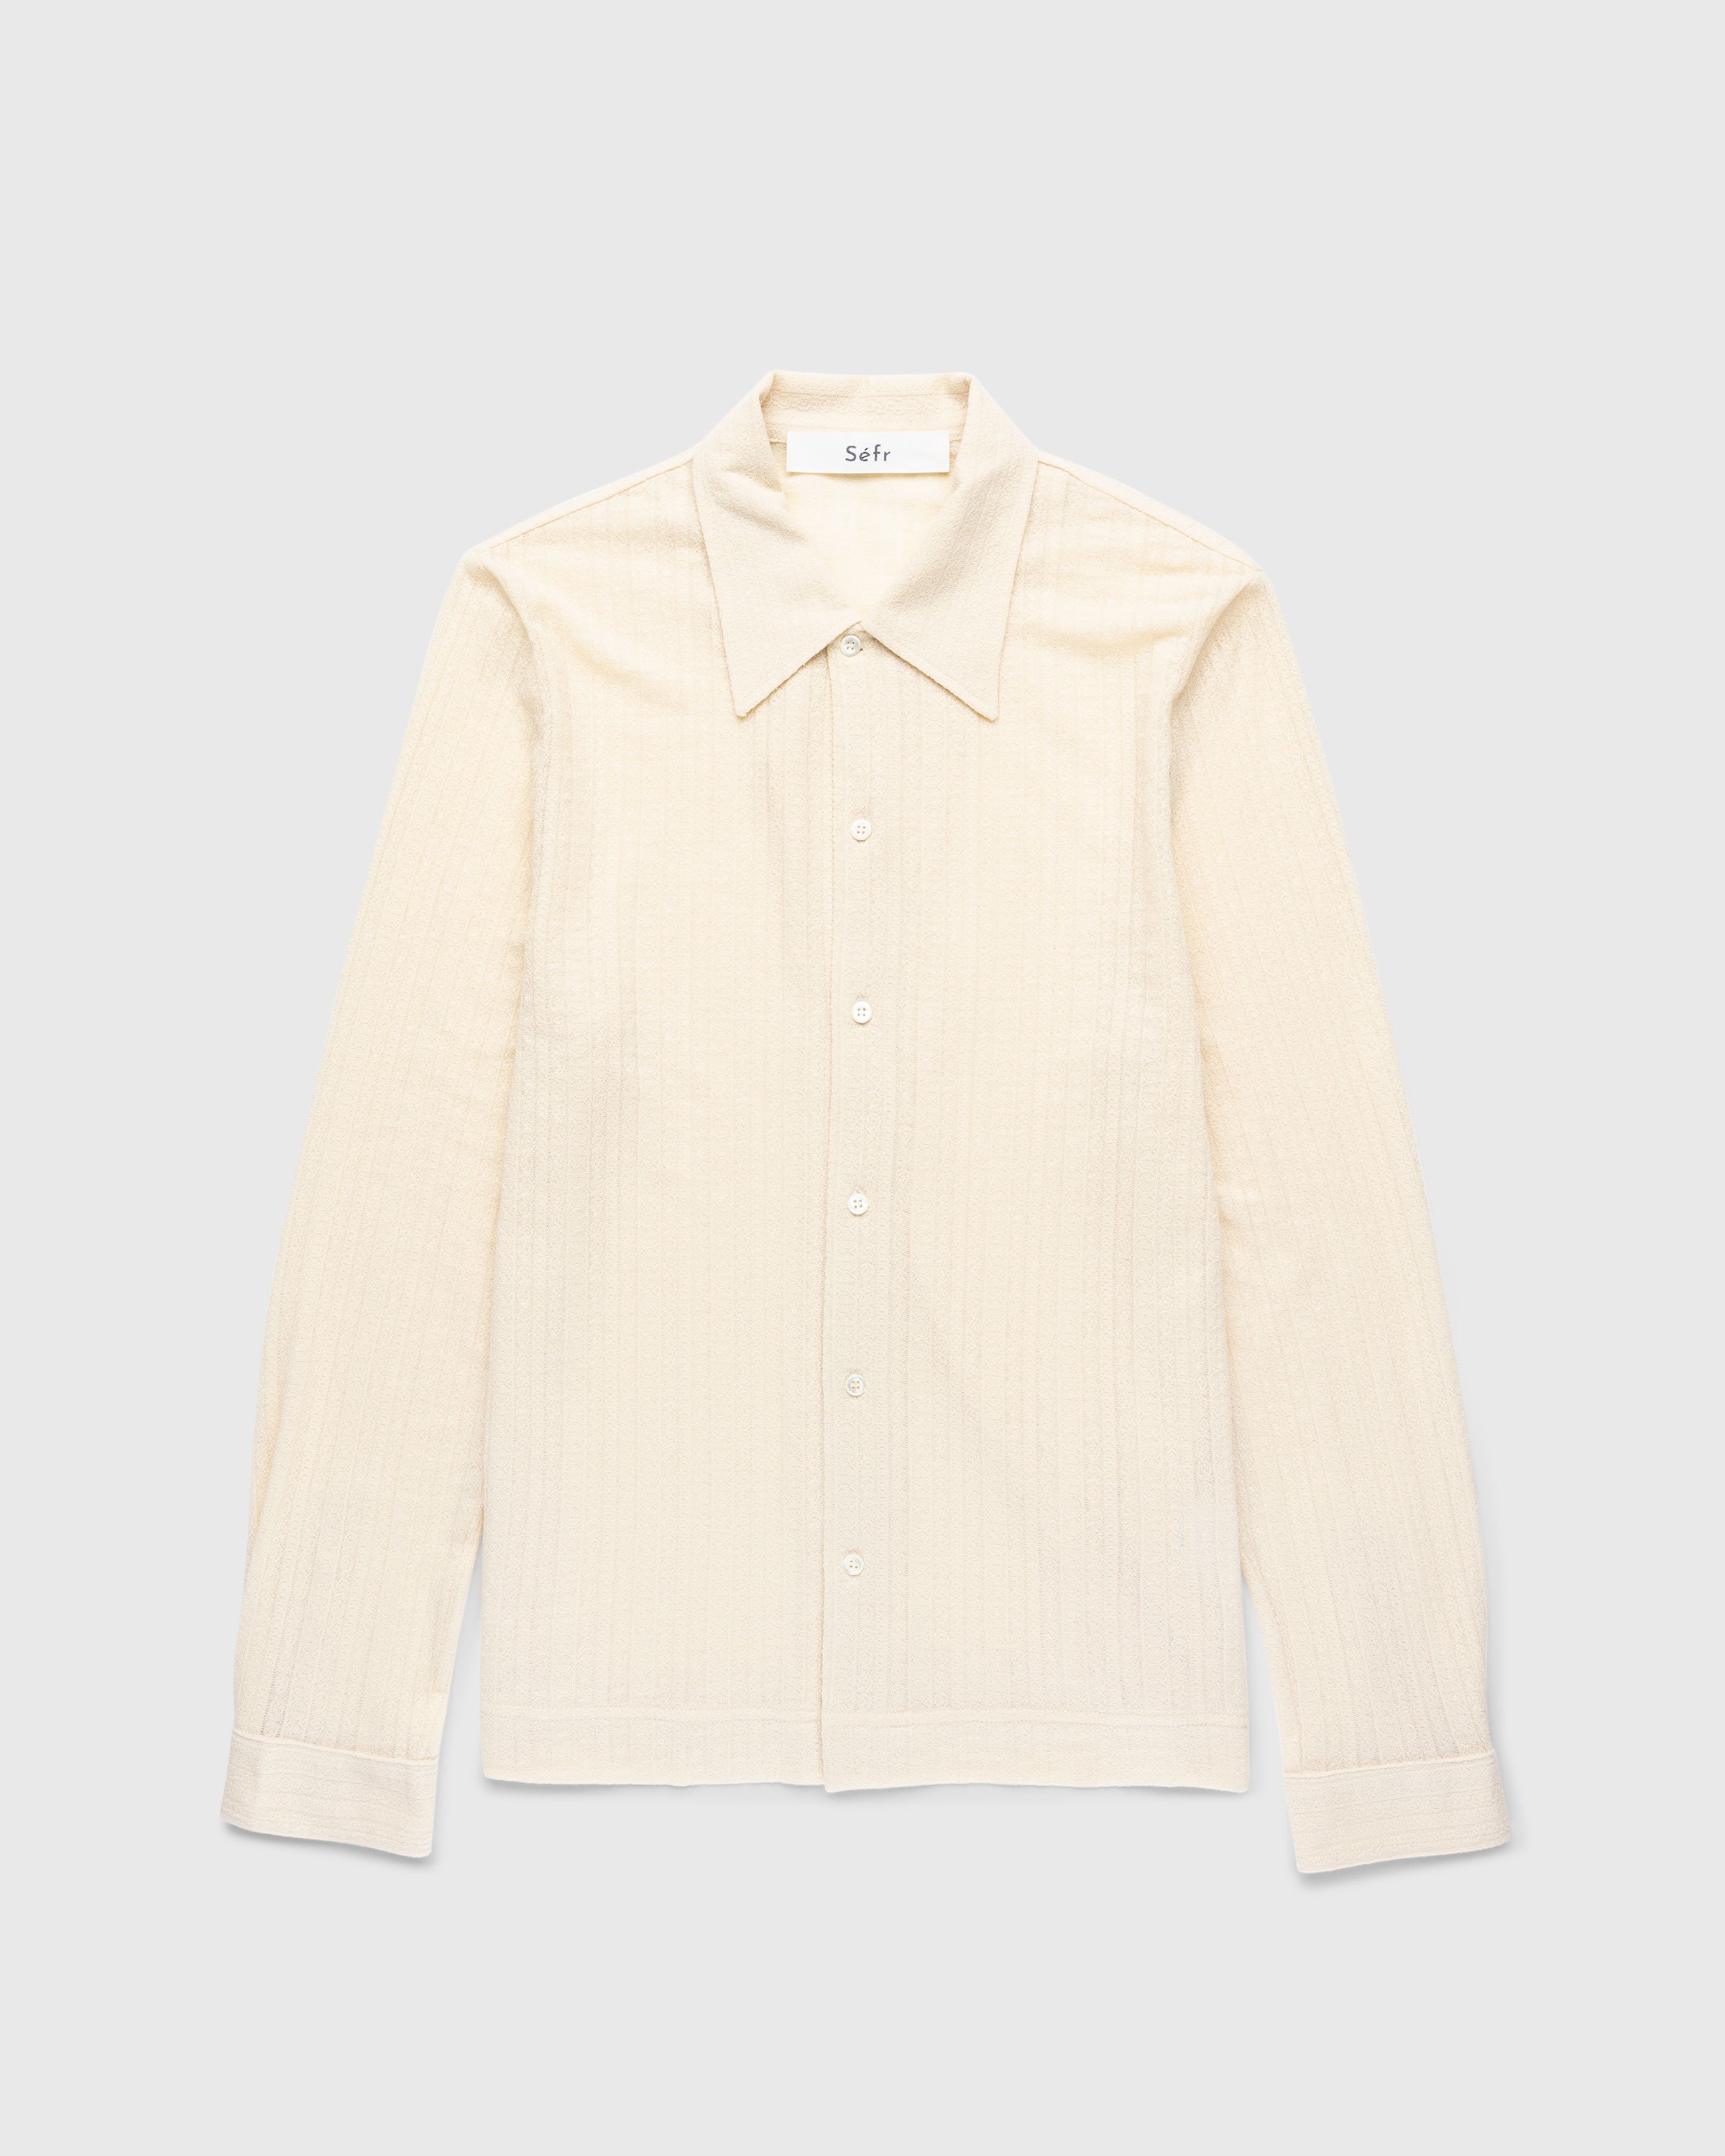 Séfr - Ripley Shirt Medallion Ivory - Clothing - White - Image 1